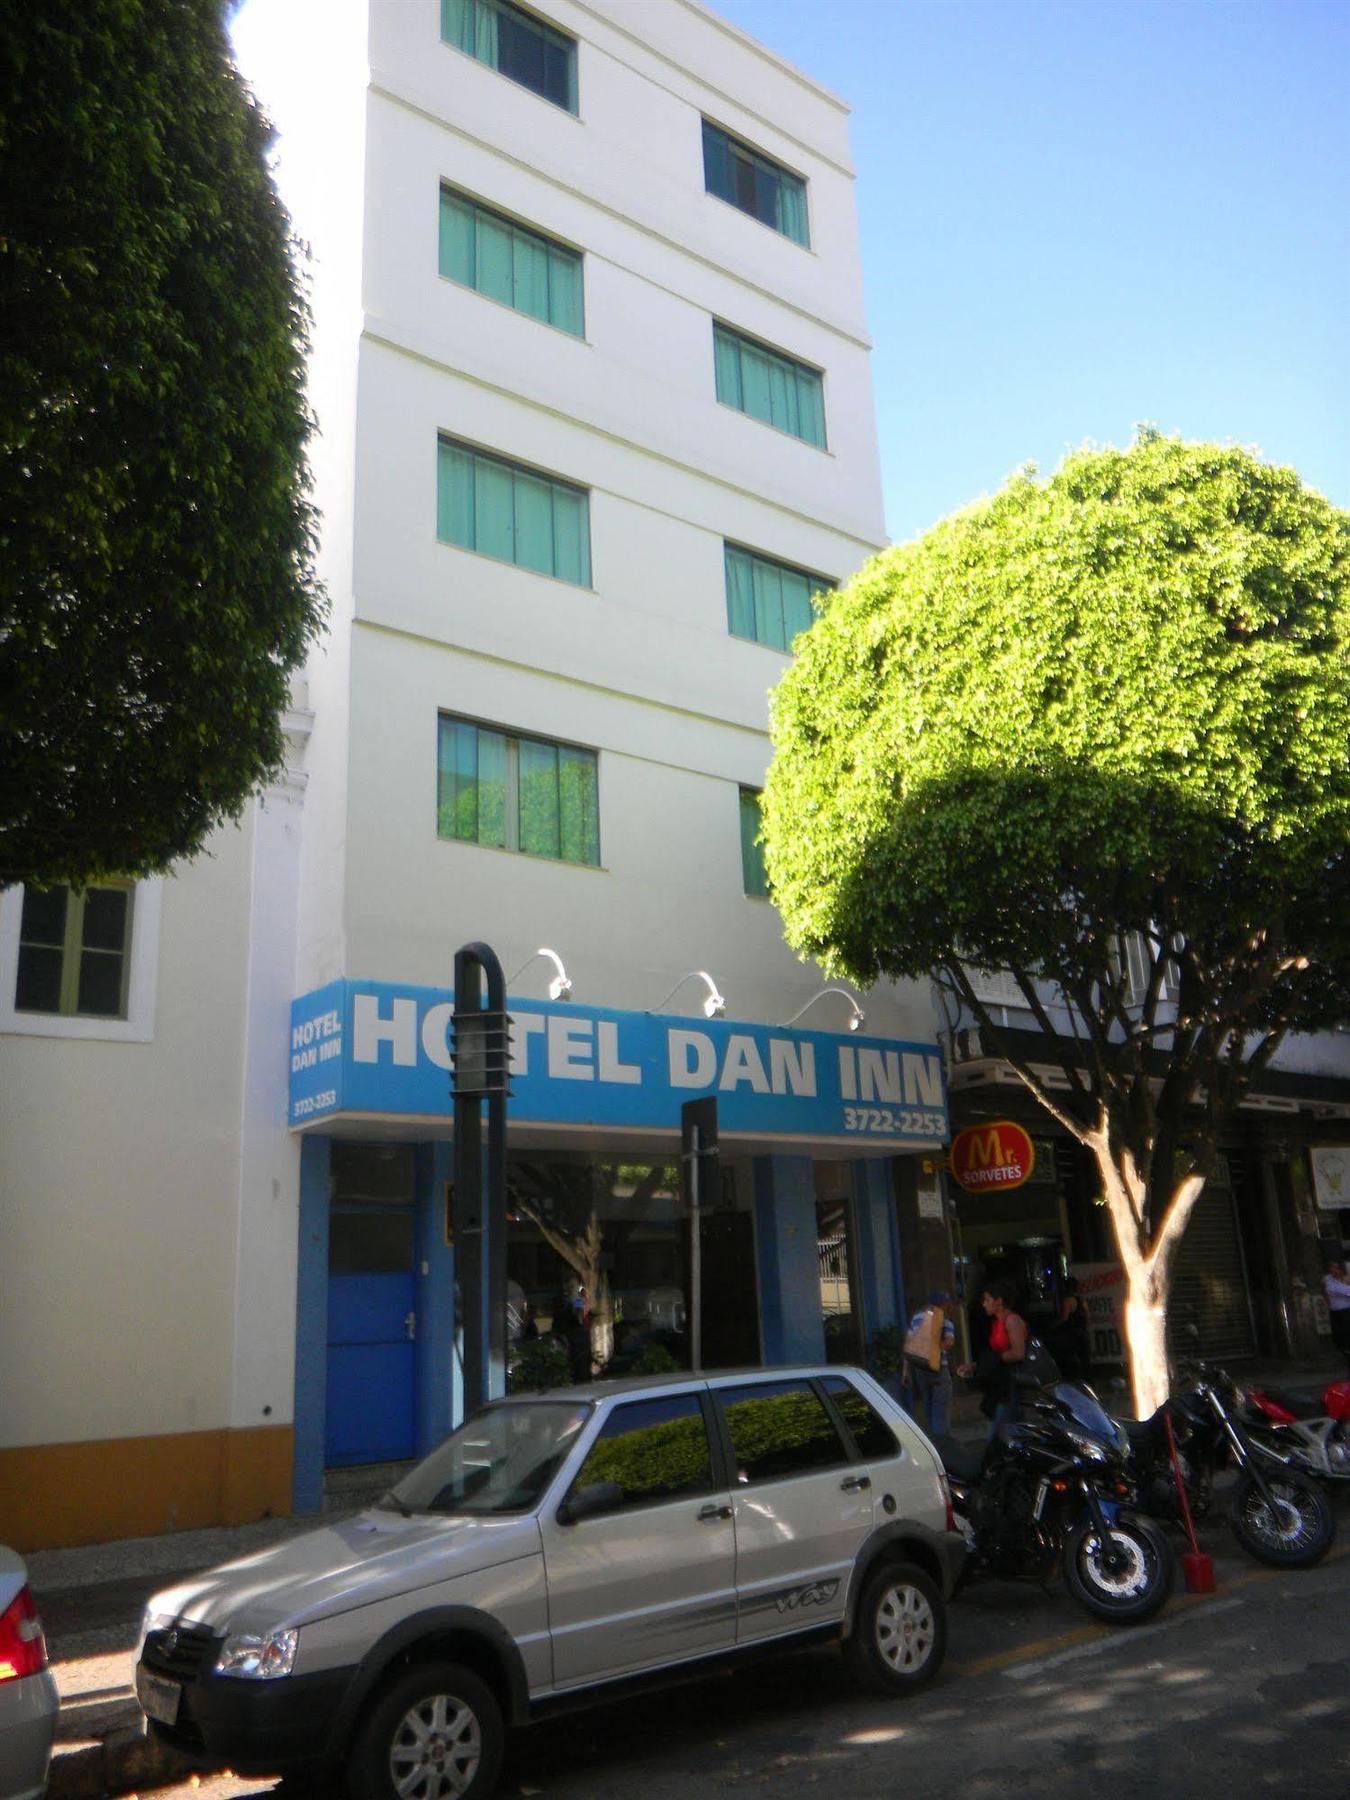 Hotel Dan Inn Pocos De Caldas - A Melhor Localizacao Do Centro Buitenkant foto